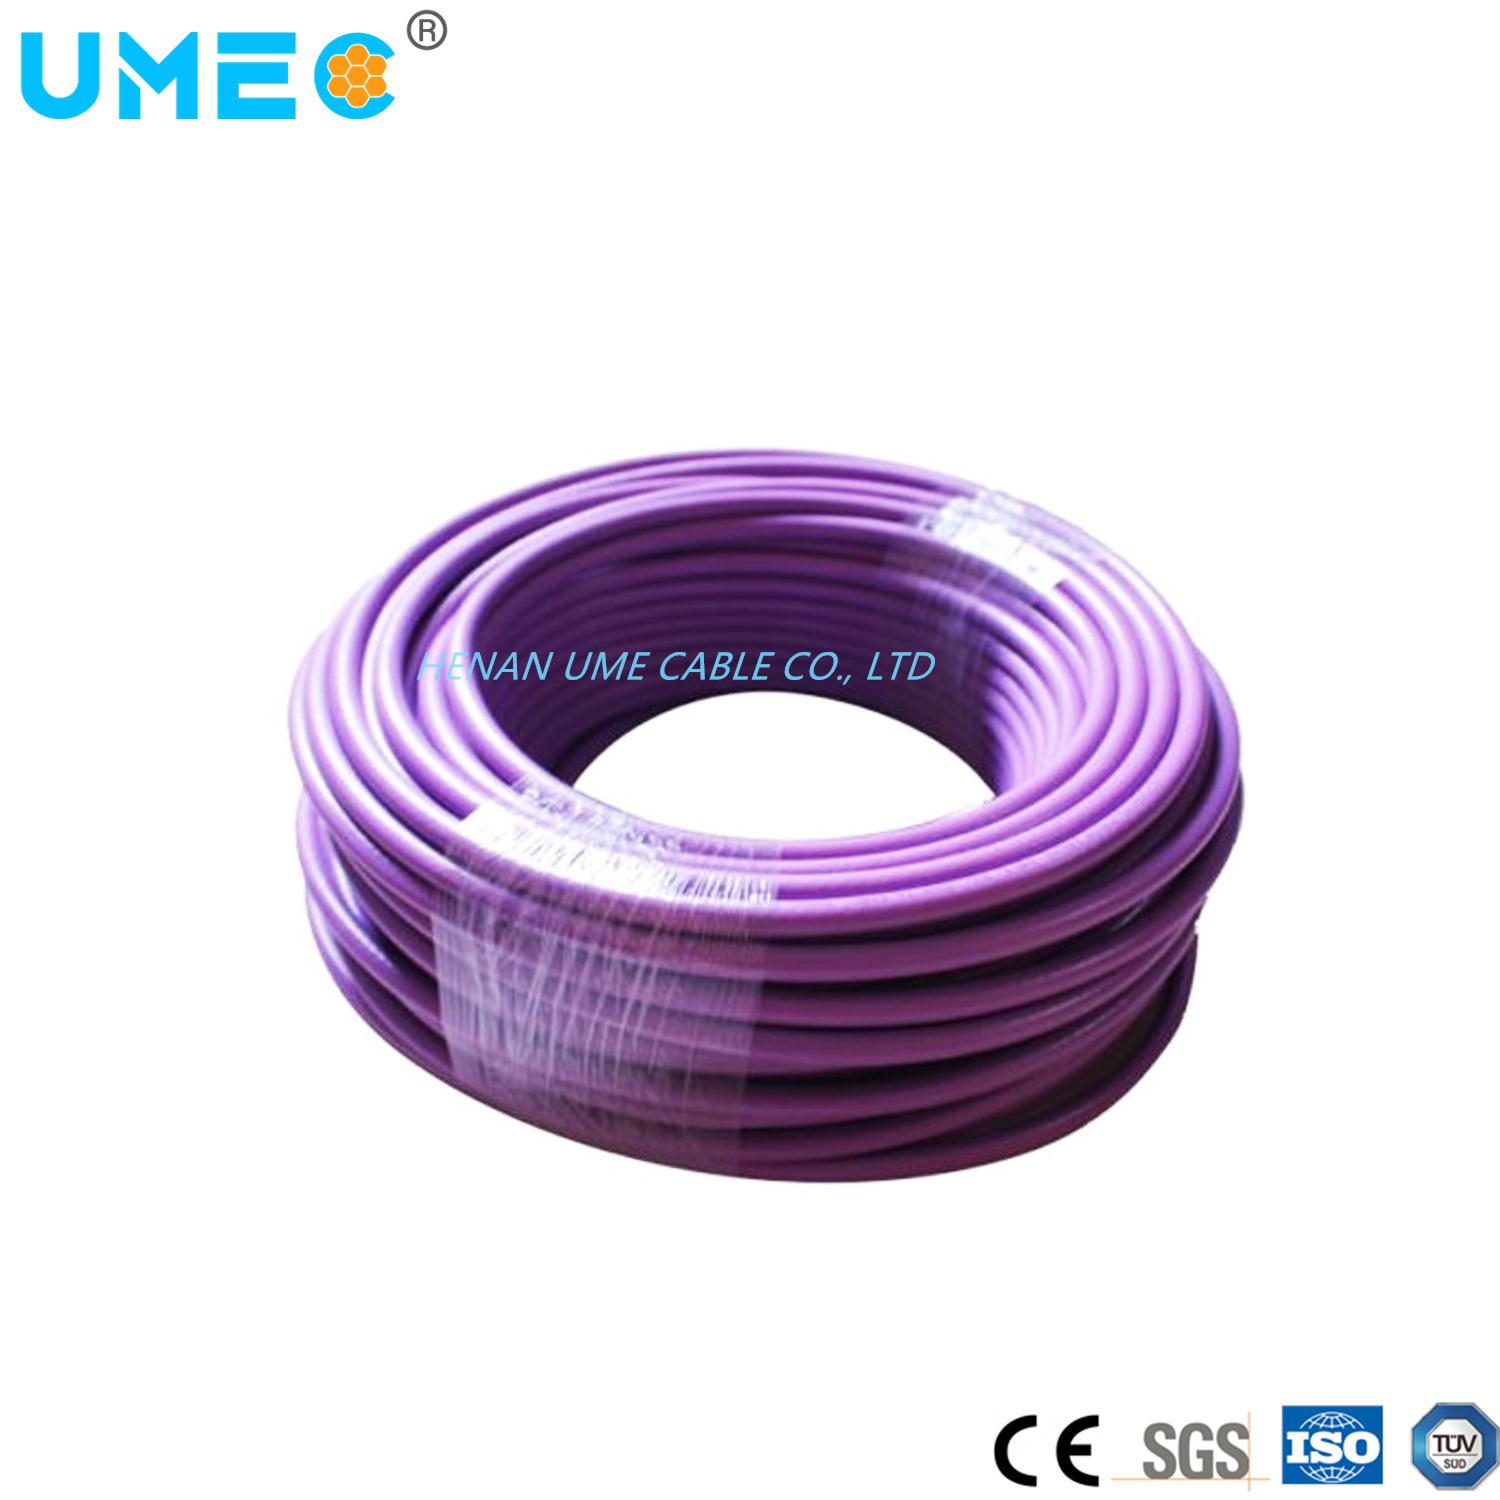 
                Los alambres y cables Siemens/6XV el cable púrpura 6xv1830-0eh10 Conductor de cobre de cable de conexión de baja tensión
            